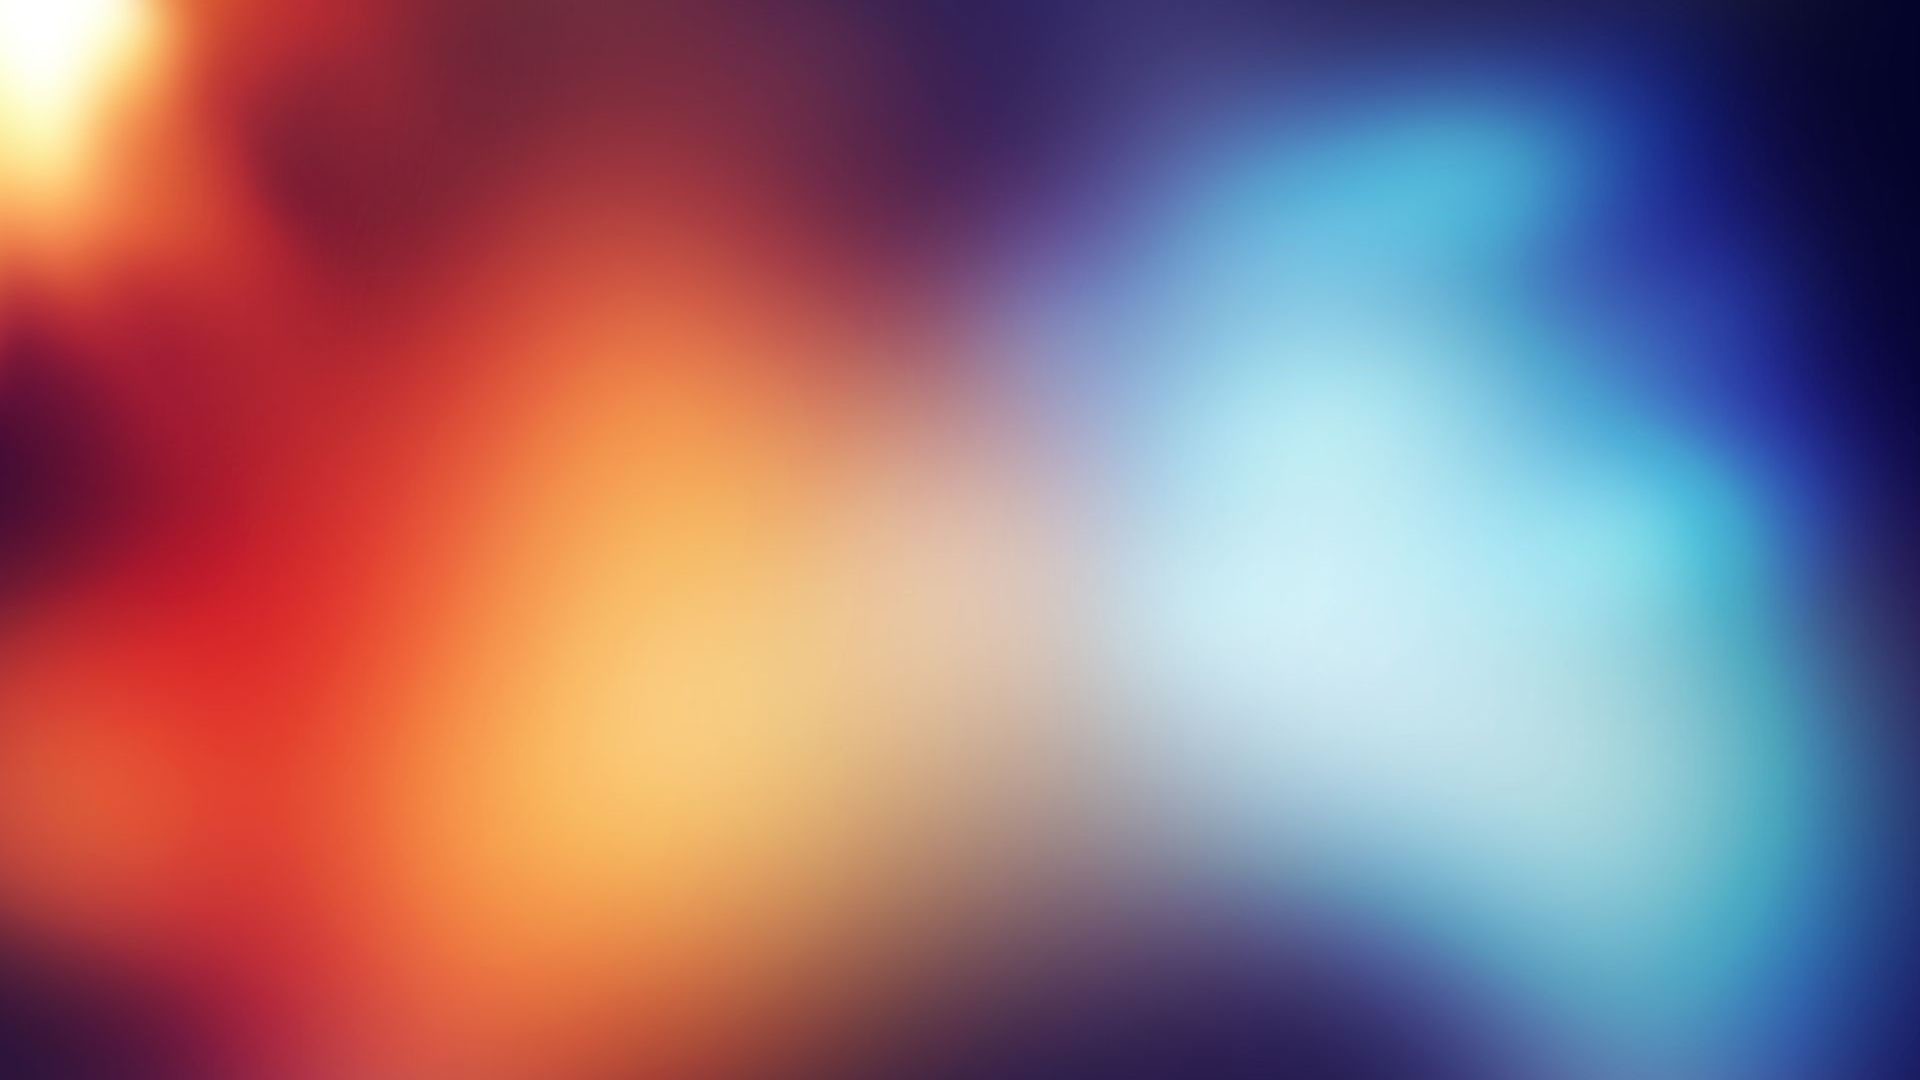 1920x1080 Gradient Desktop Wallpapers › 780514818 Gradient Backgrounds